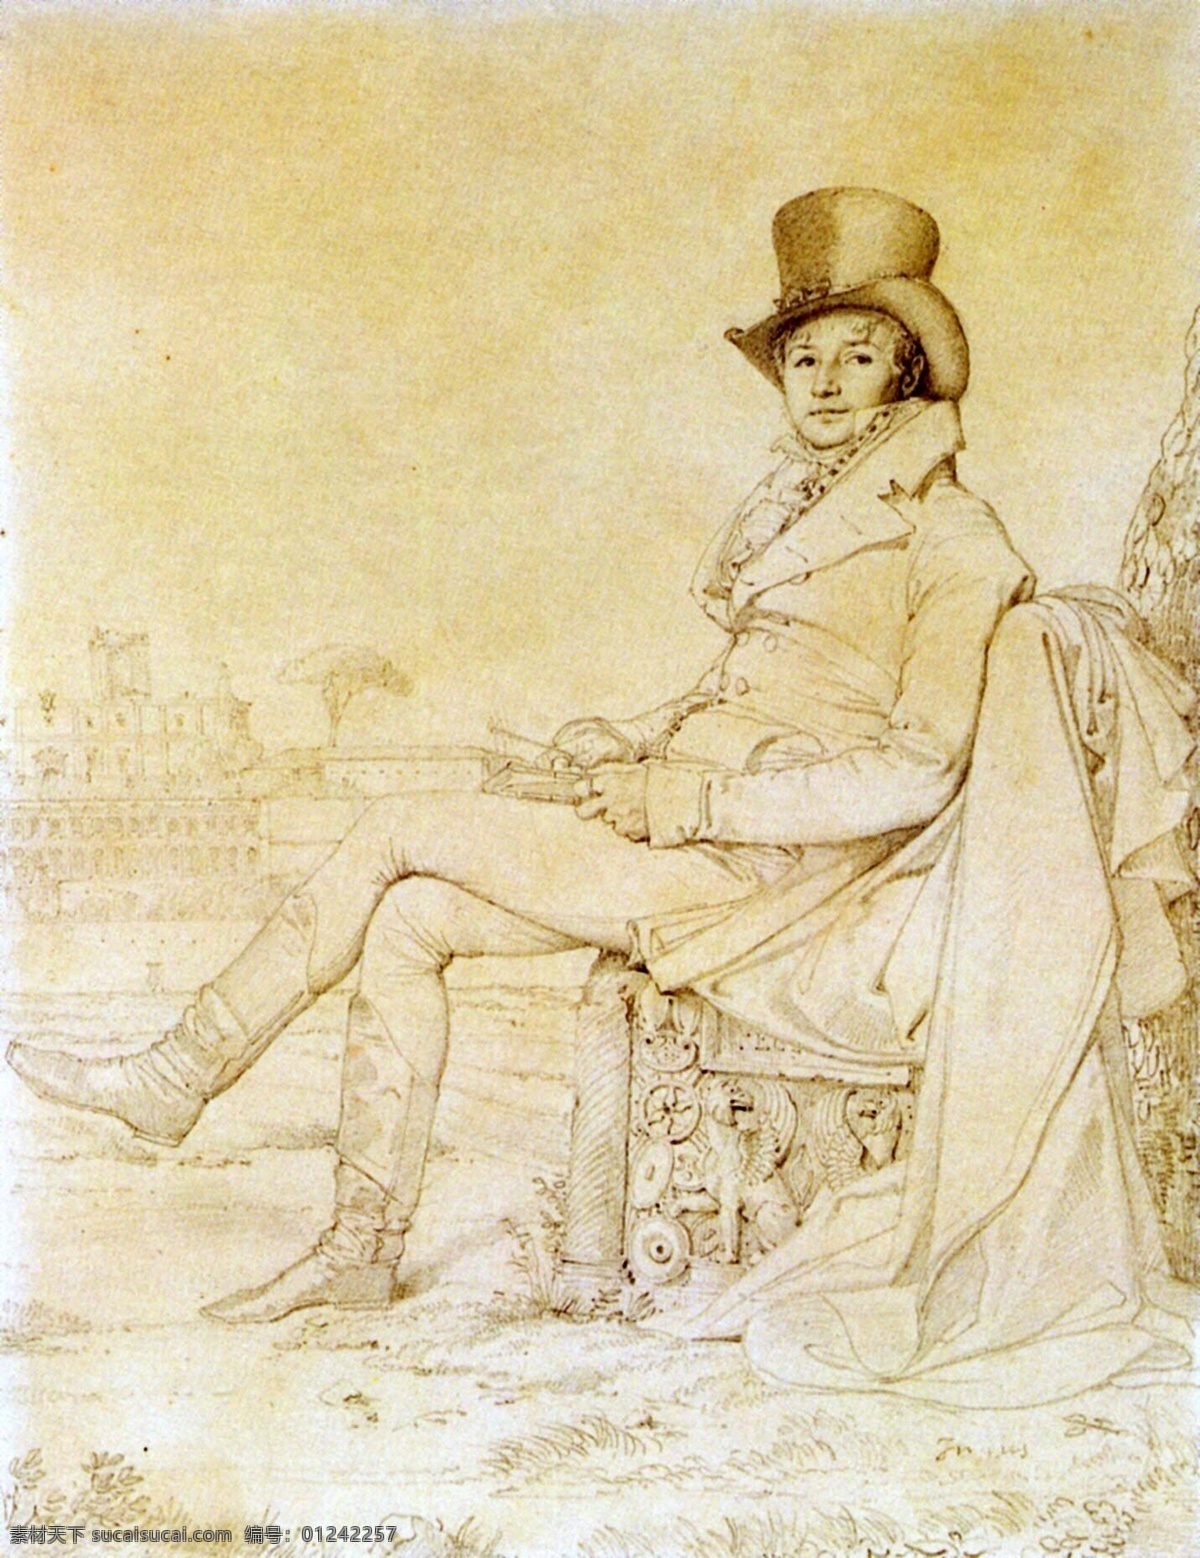 安格尔素描画 欧洲 人物画 设计素材 人物肖像 素描速写 书画美术 黄色